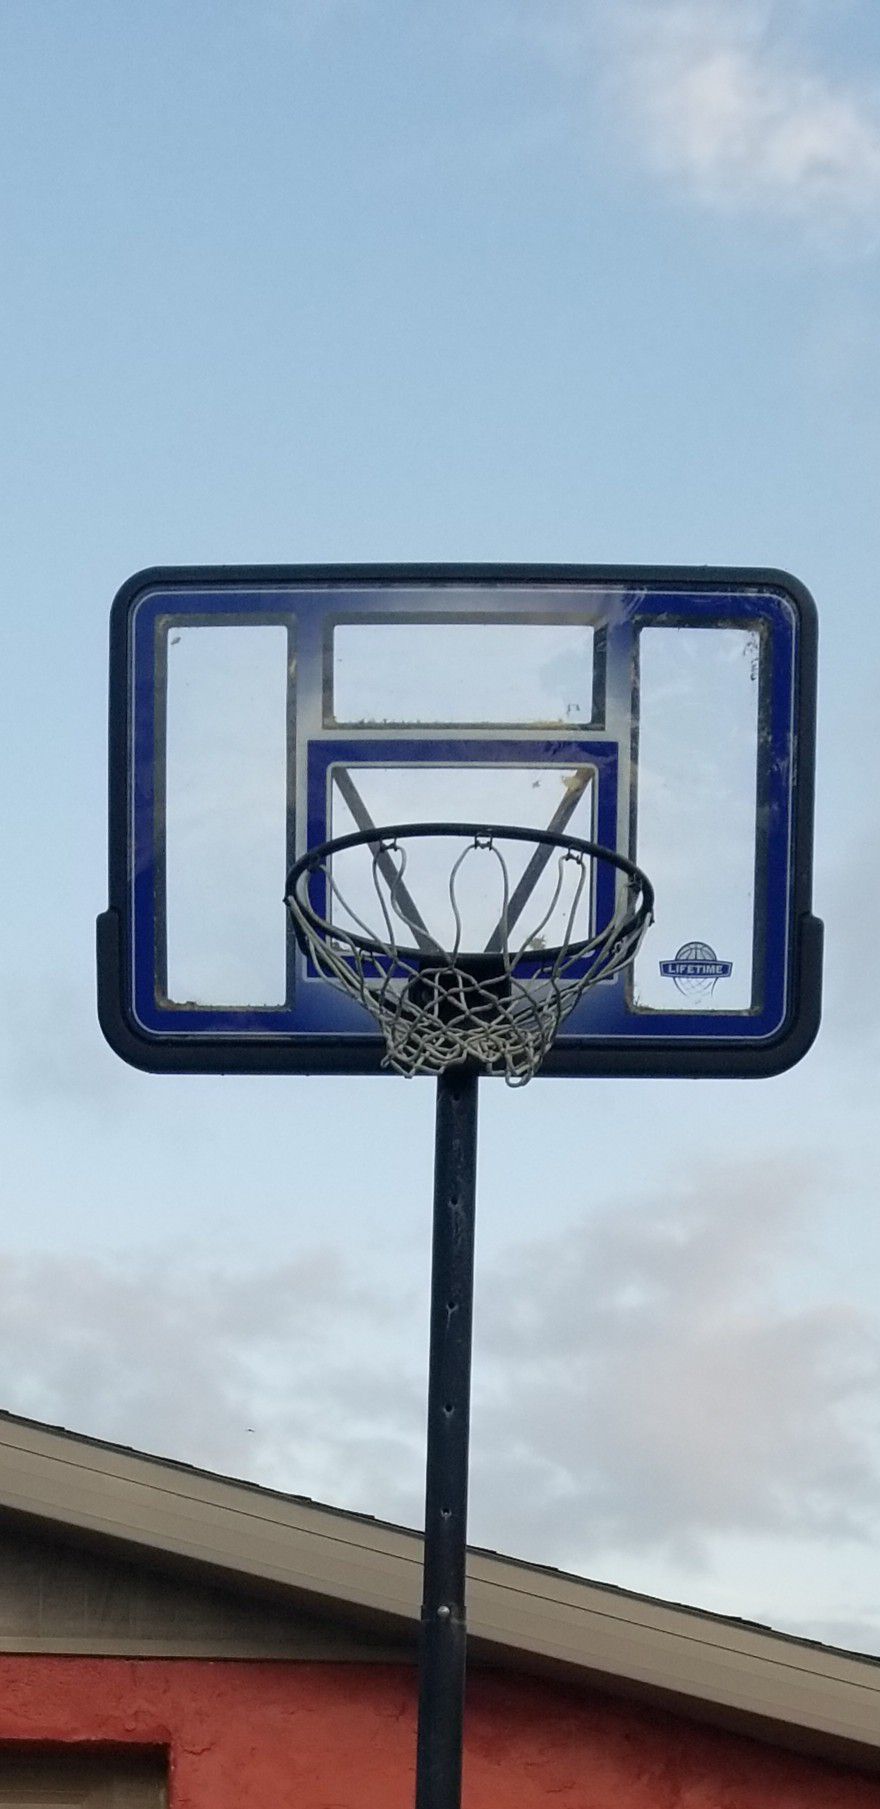 Basketball hoop 2 years old